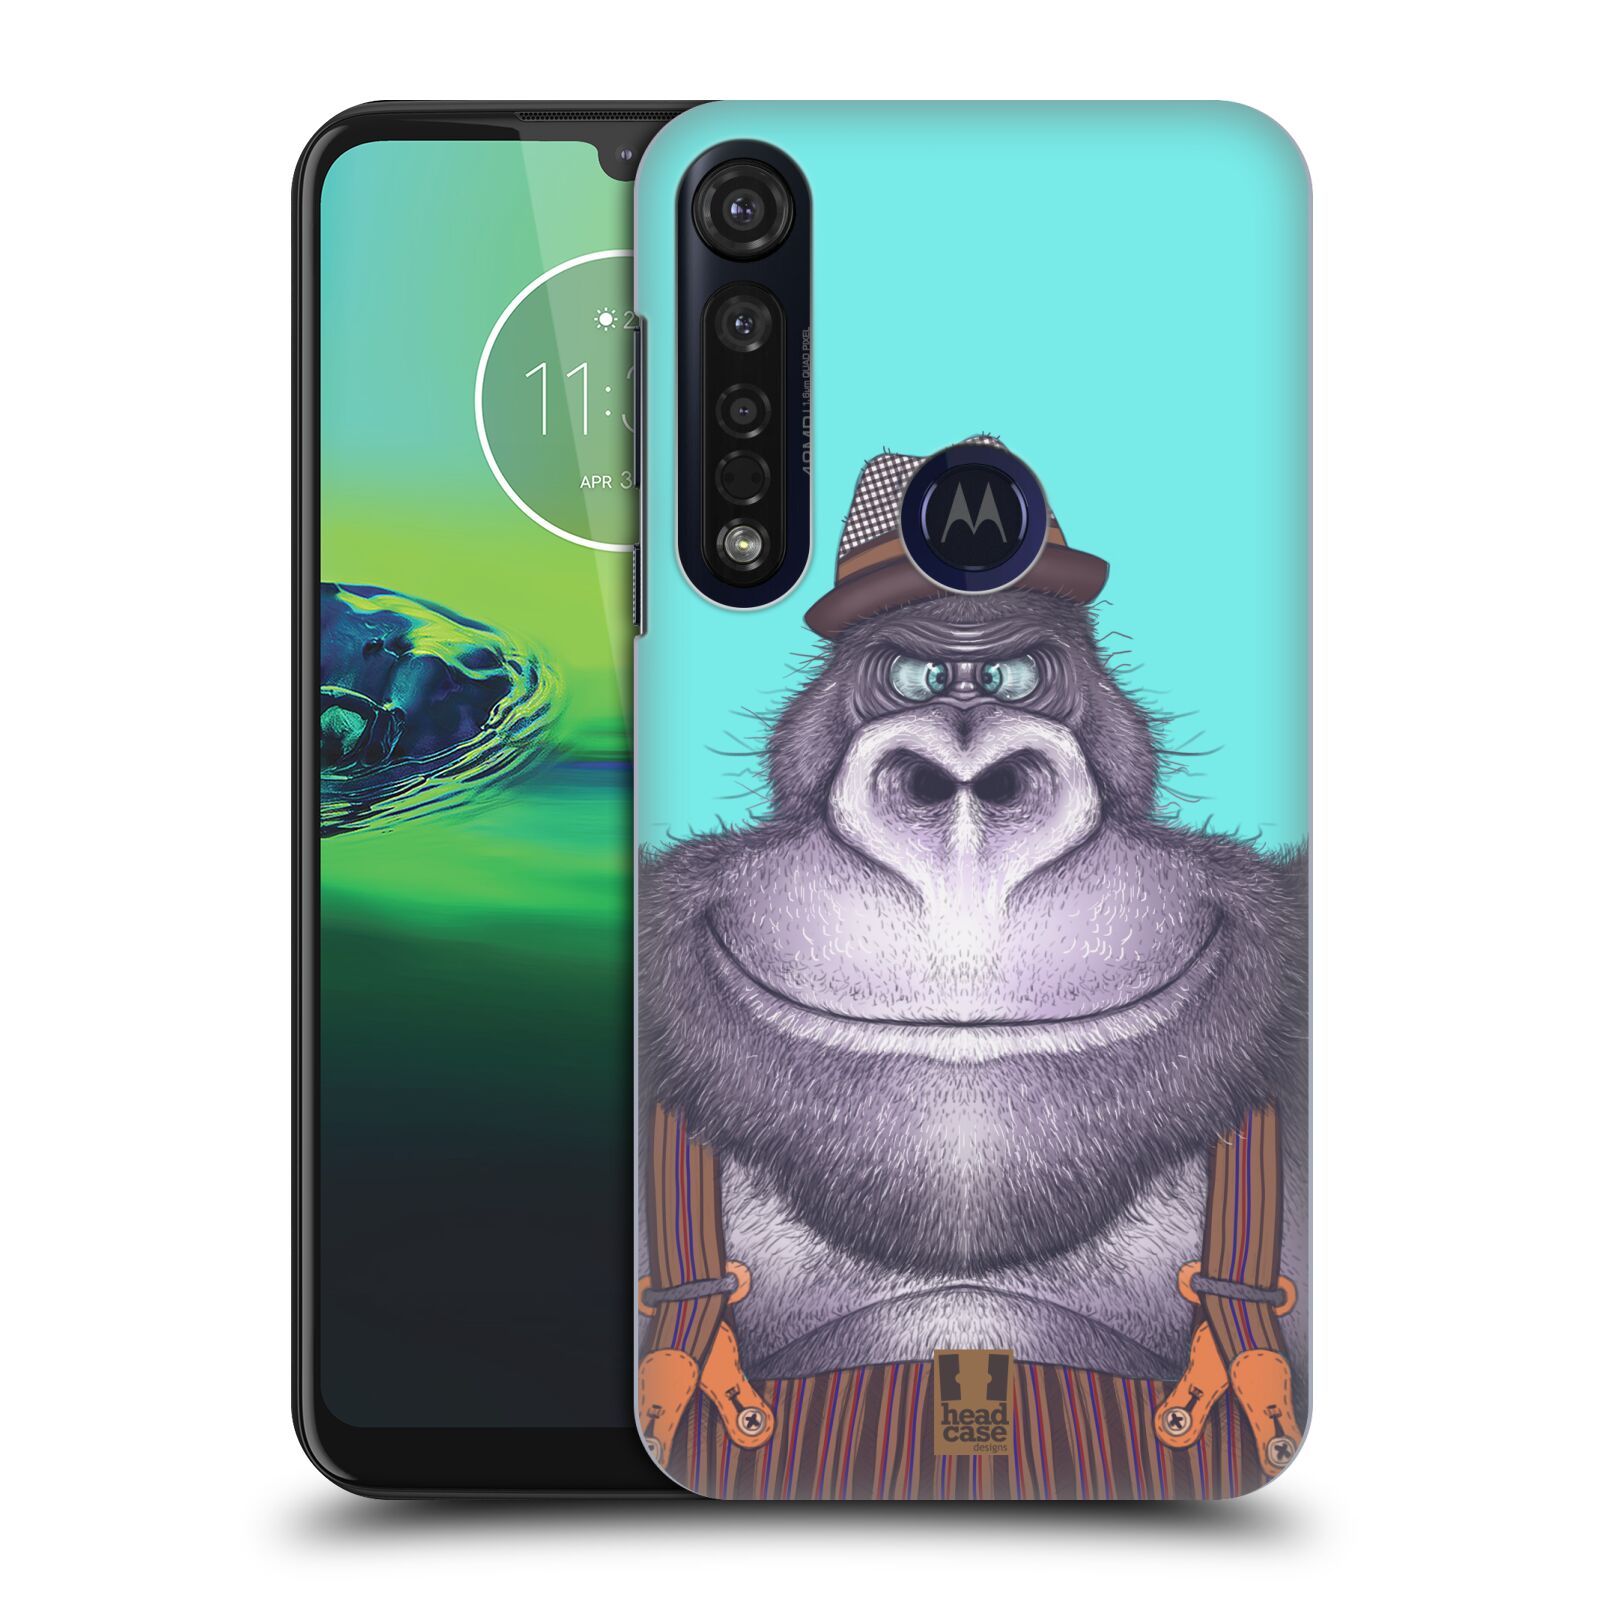 Pouzdro na mobil Motorola Moto G8 PLUS - HEAD CASE - vzor Kreslená zvířátka gorila